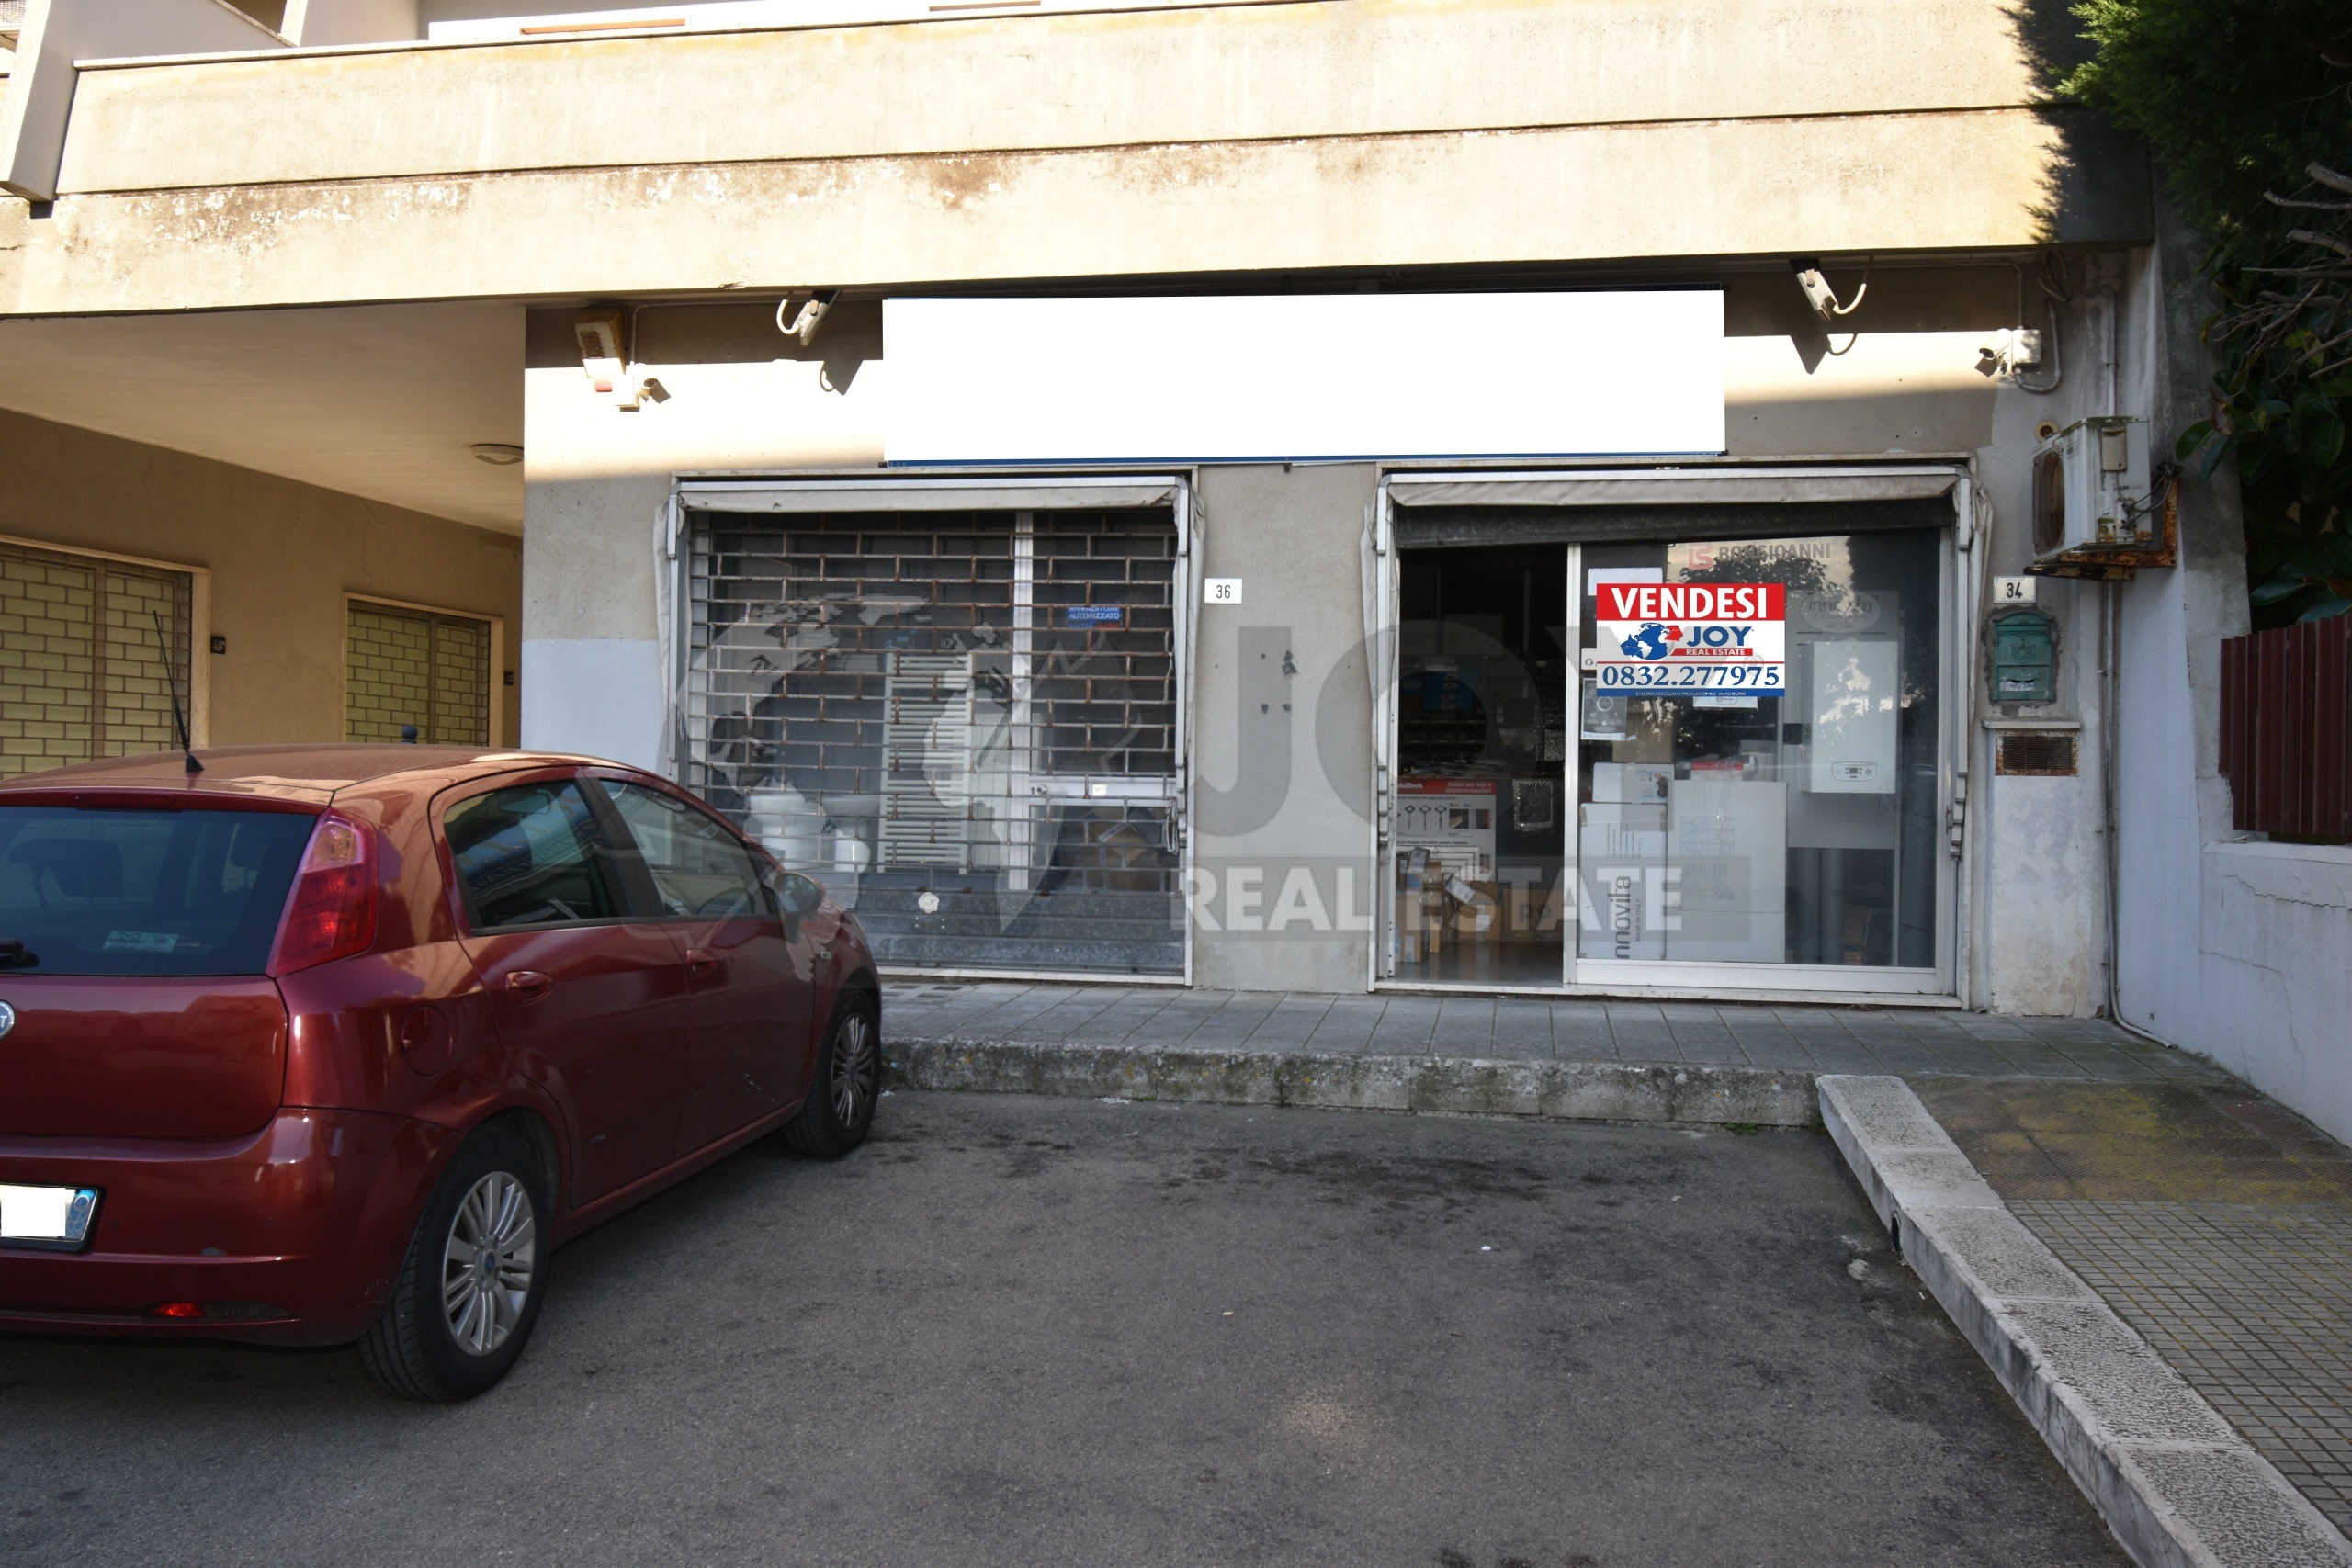 Locale commerciale in vendita in via adriatica 36, Lecce